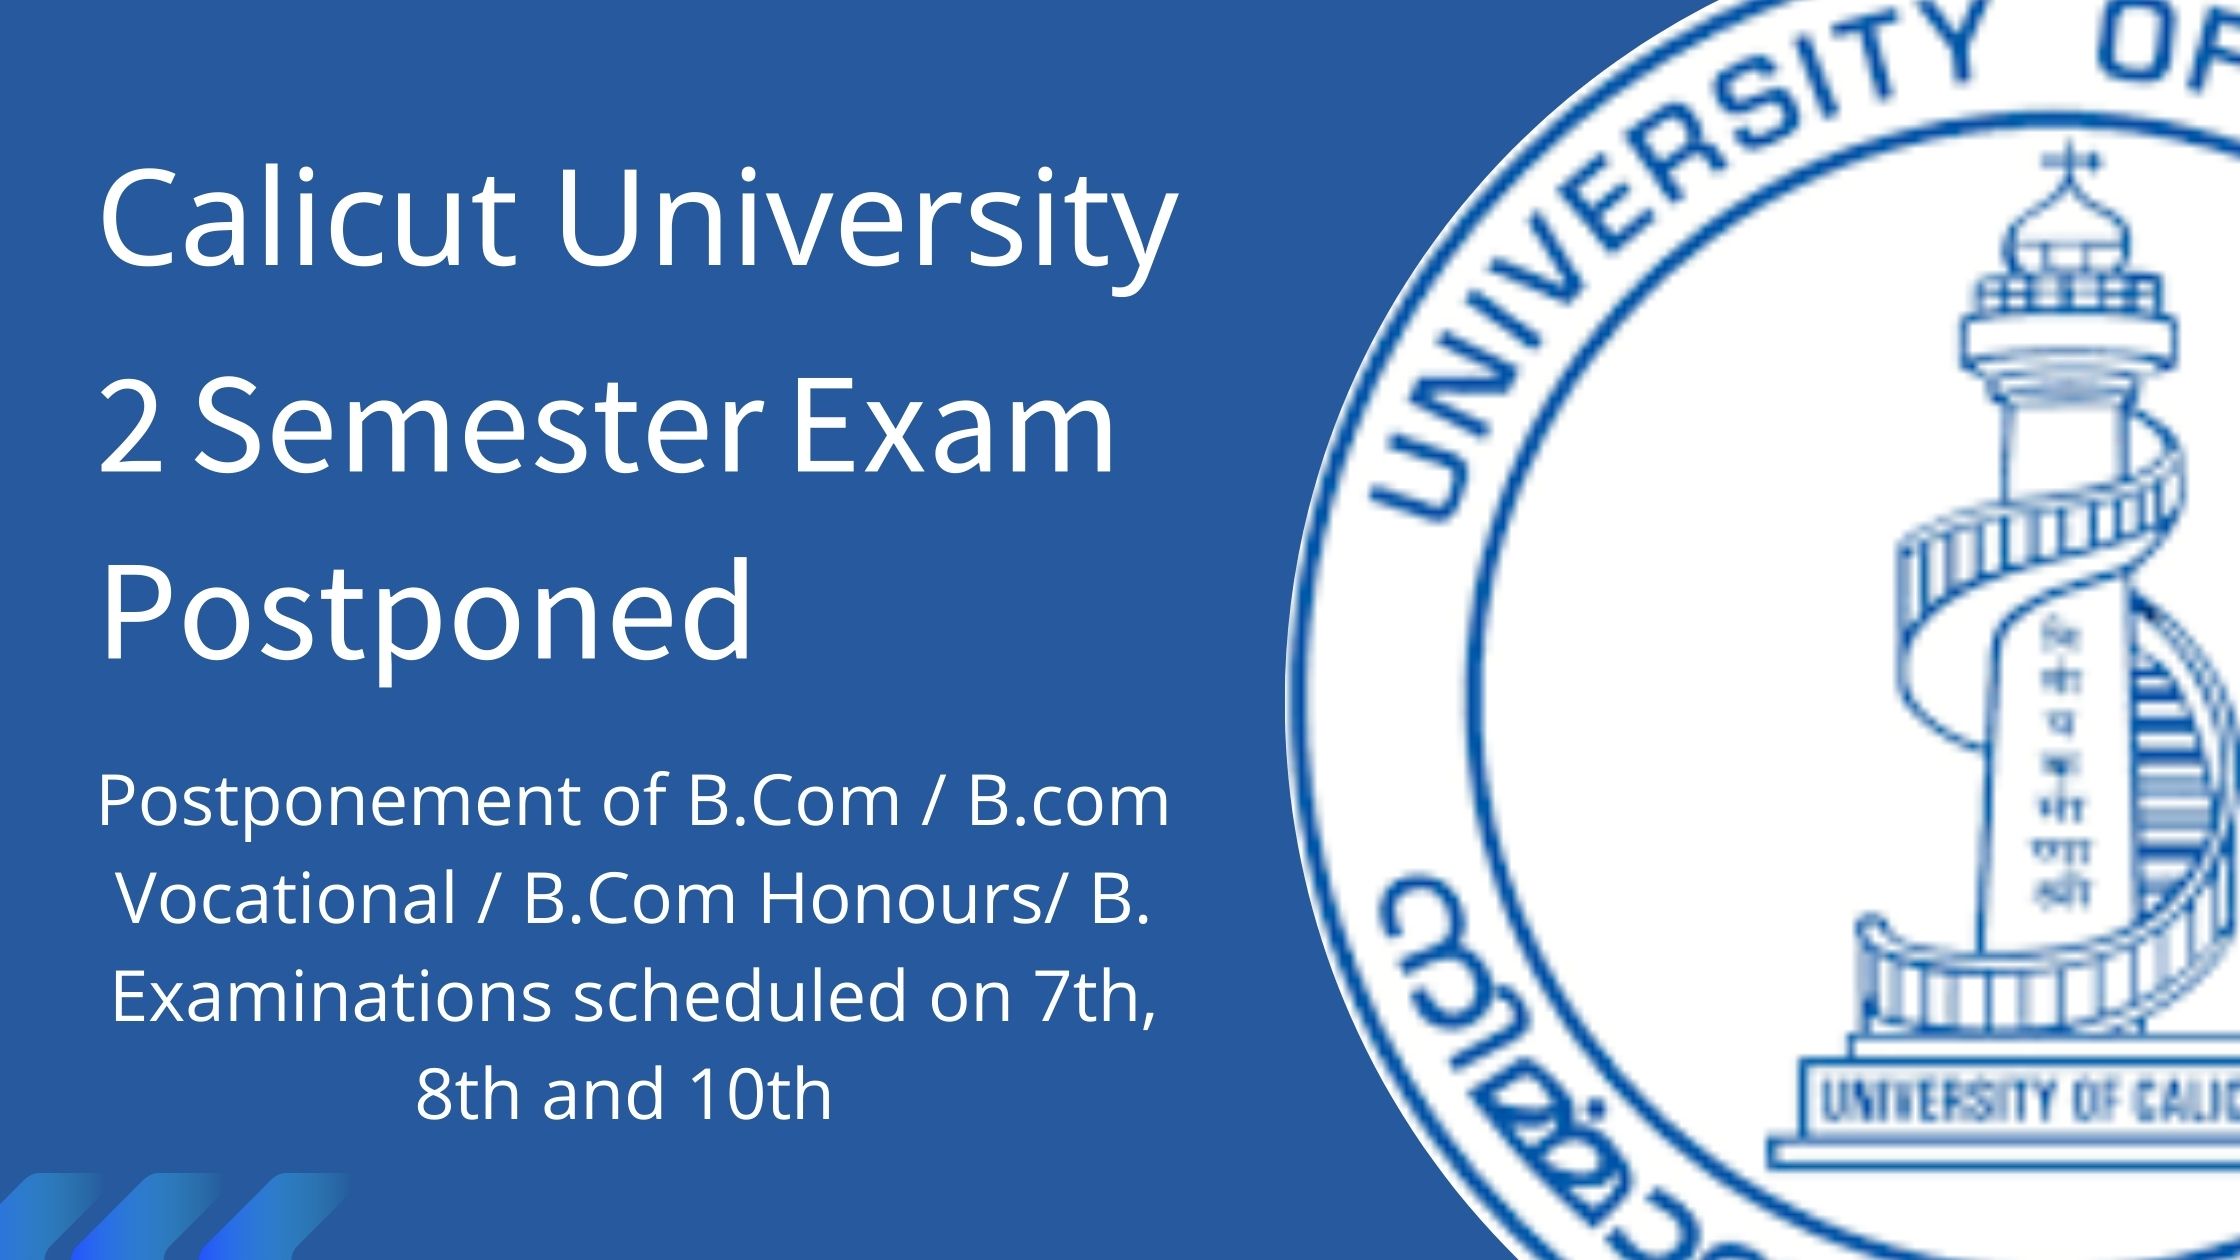 Second Semester Exams Postponed